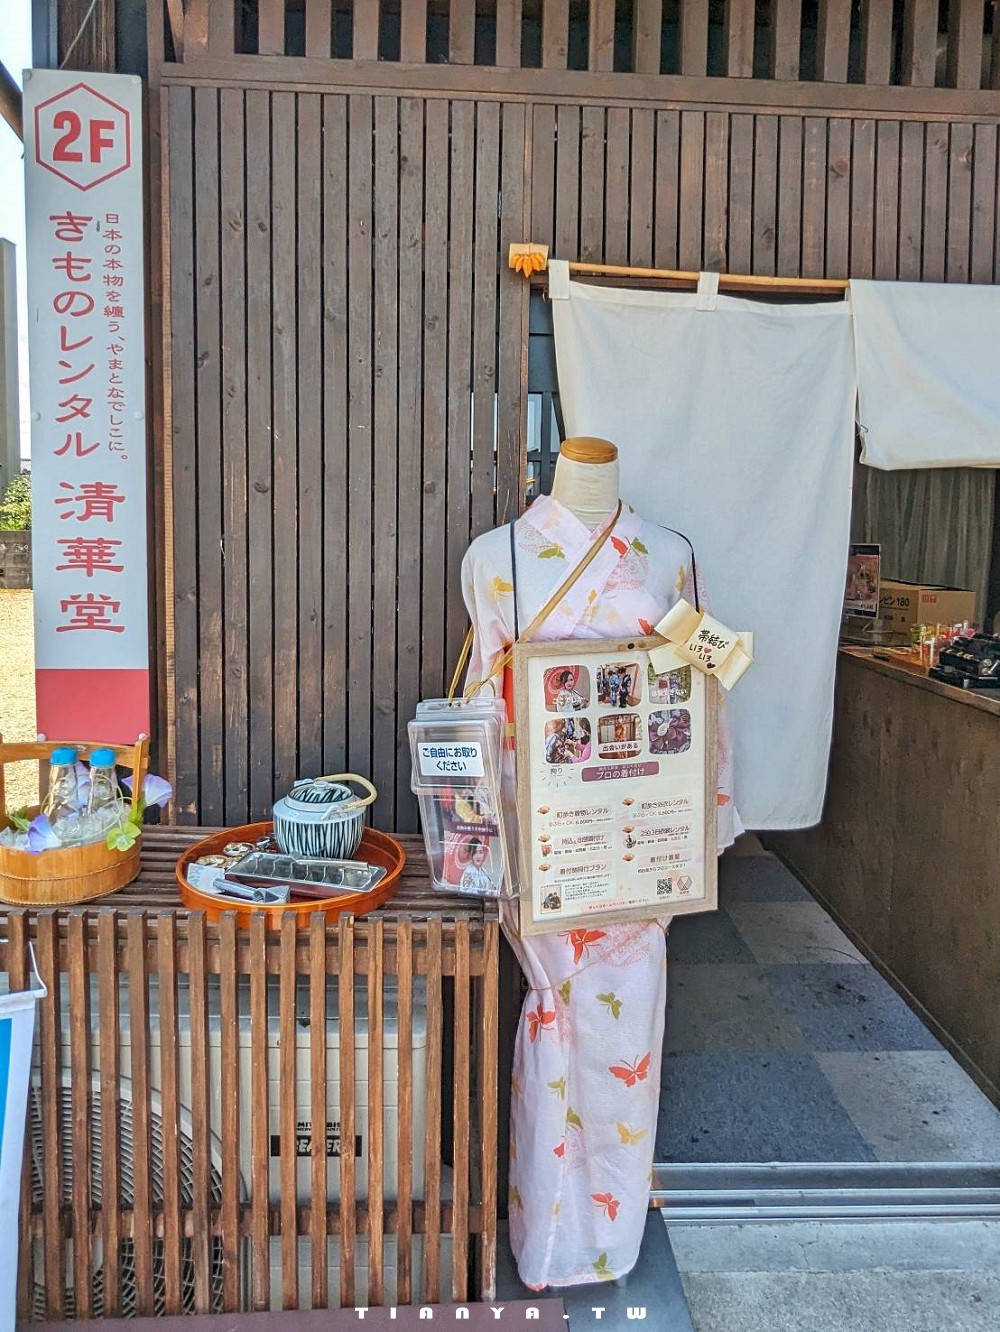 【日本體驗】穿著和服逛古城！犬山城下町和服租借店家 & 必拍美照景點